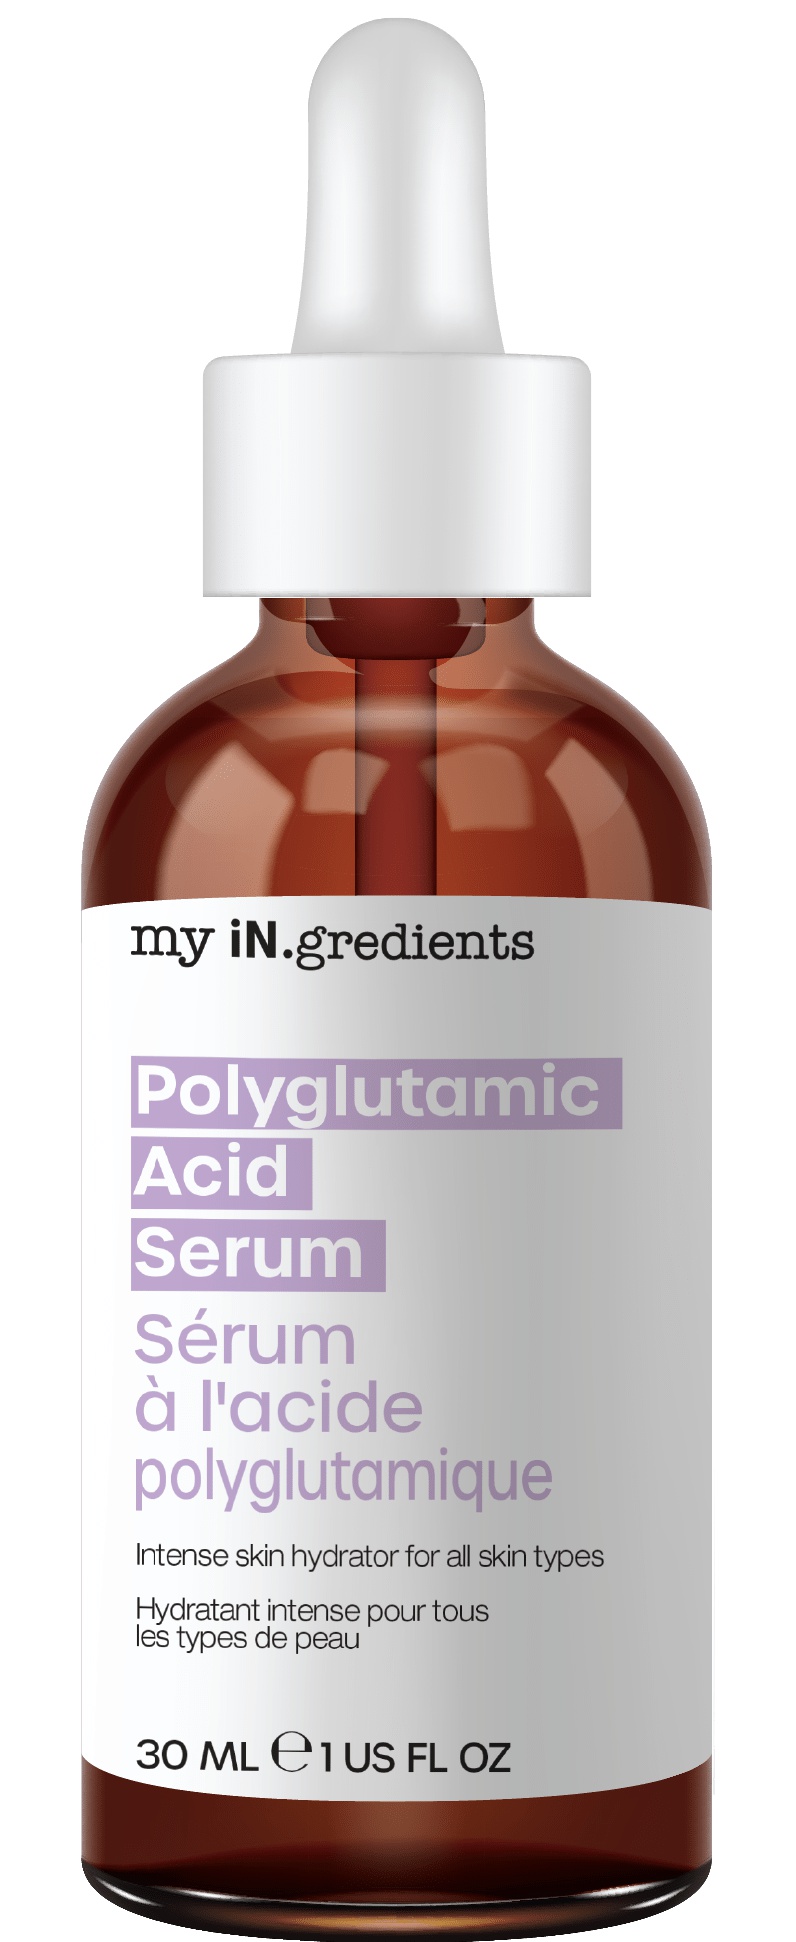 My in. gredients Polyglutamic Acid Serum